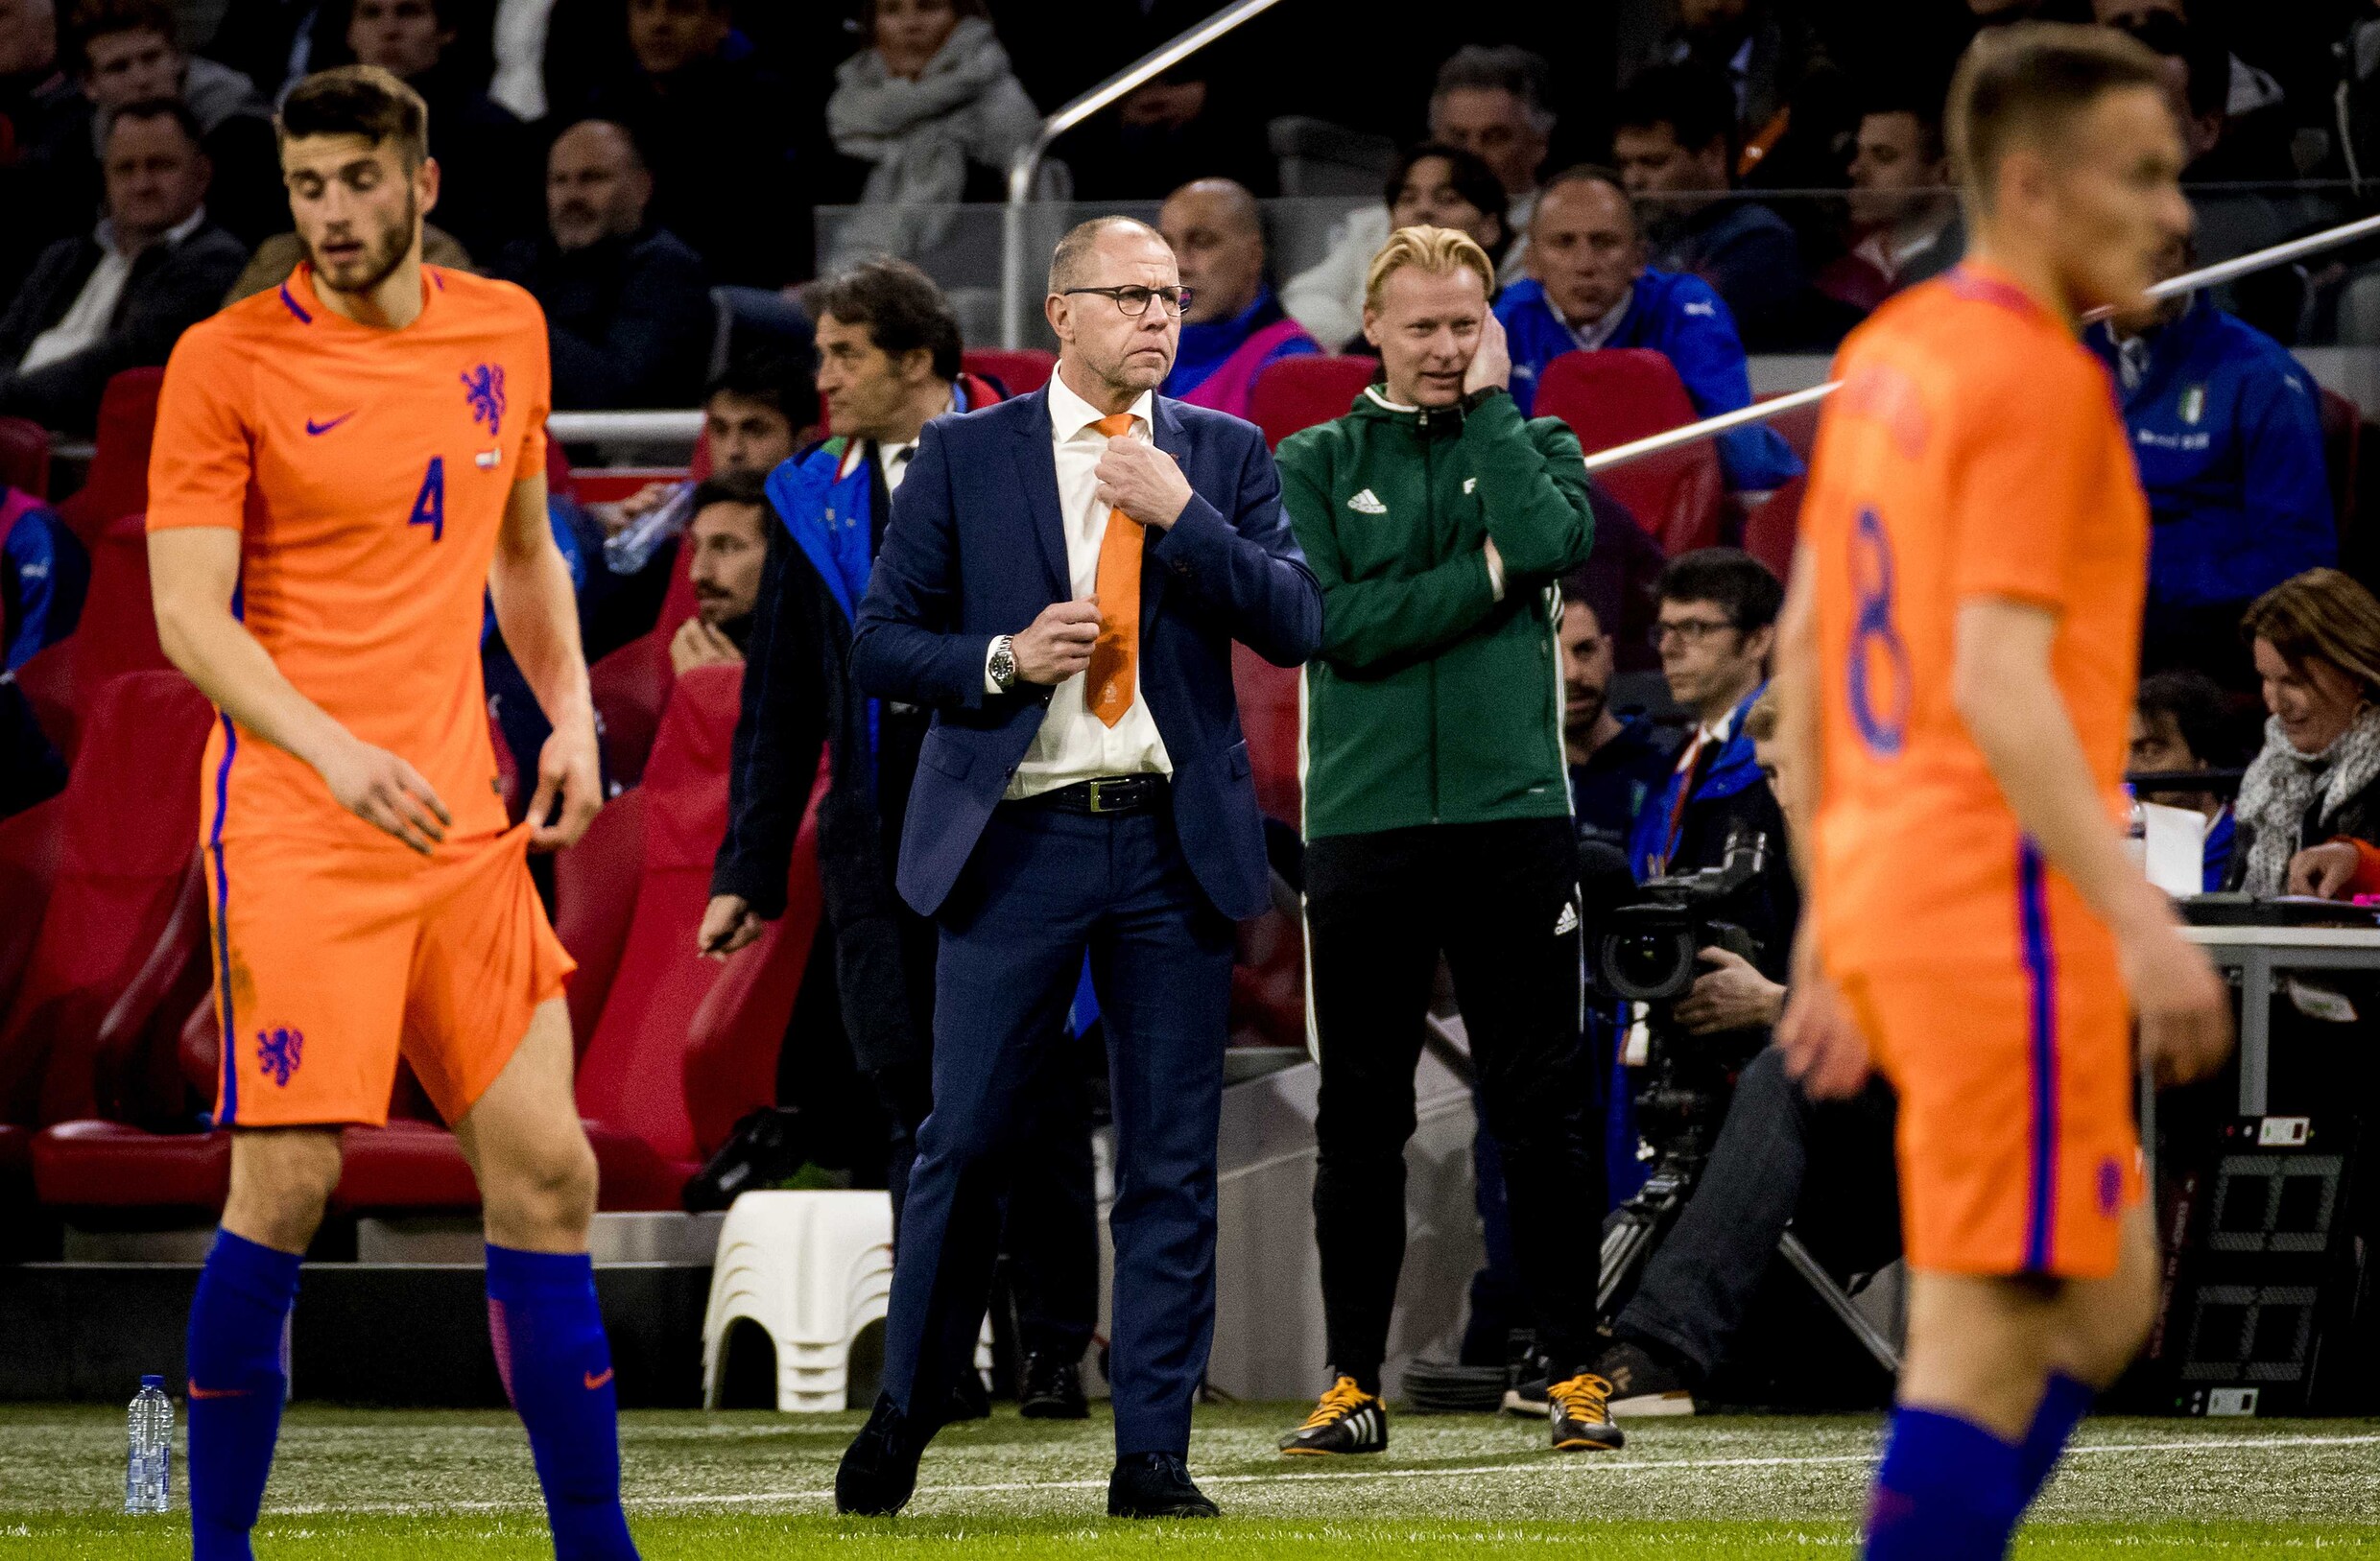 "Het WK? Dat halen we nog!" Seedorf gelooft er nog in, maar ziet Oranje 9 jaar na afscheid wel weer verliezen